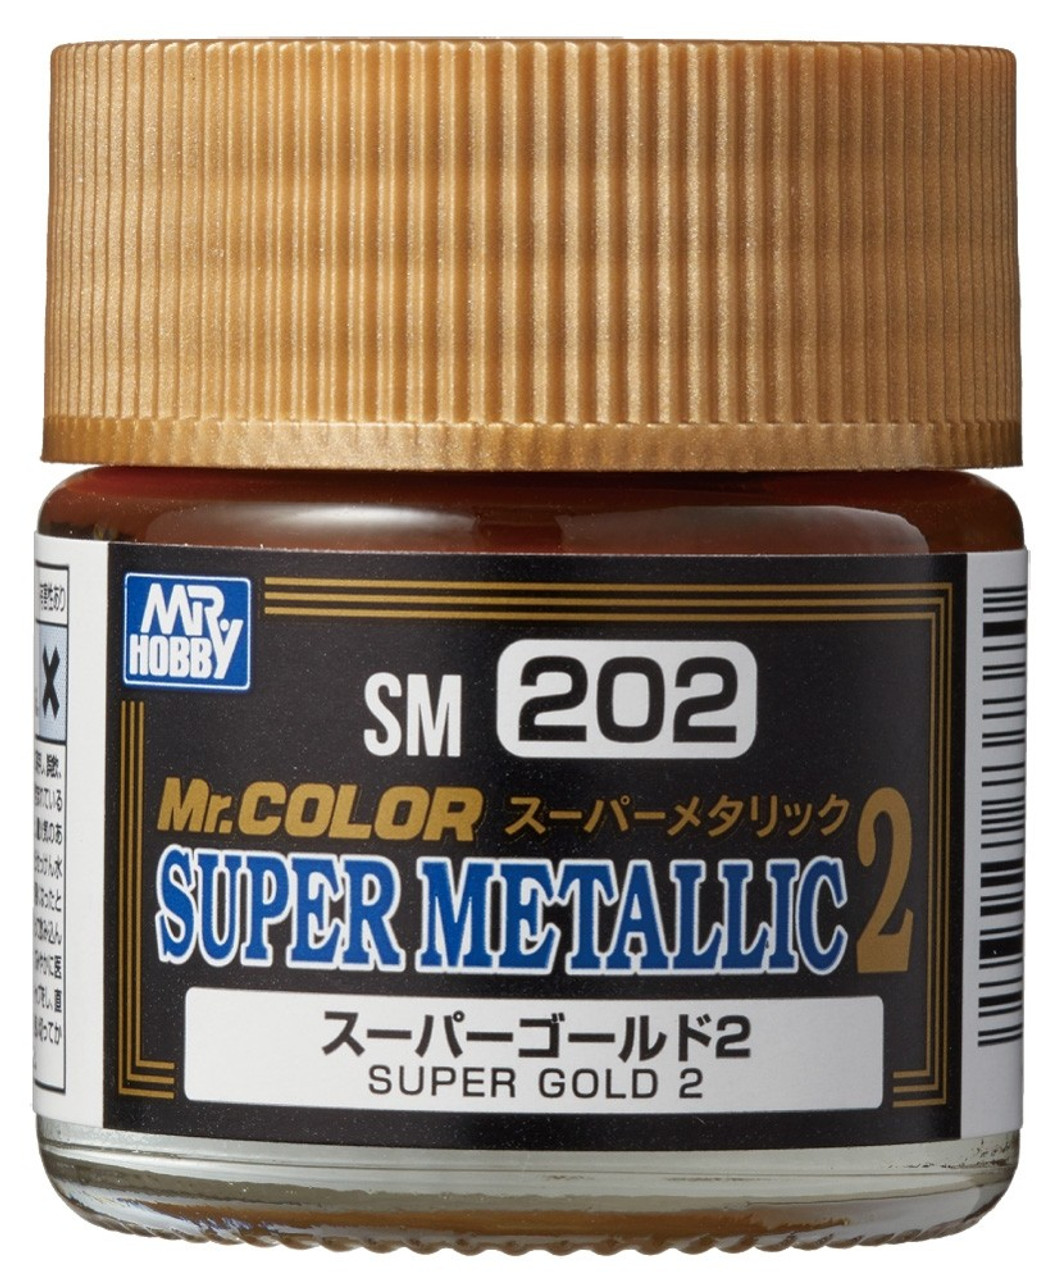 SM 202 Super Gold 2 10ml, GSI